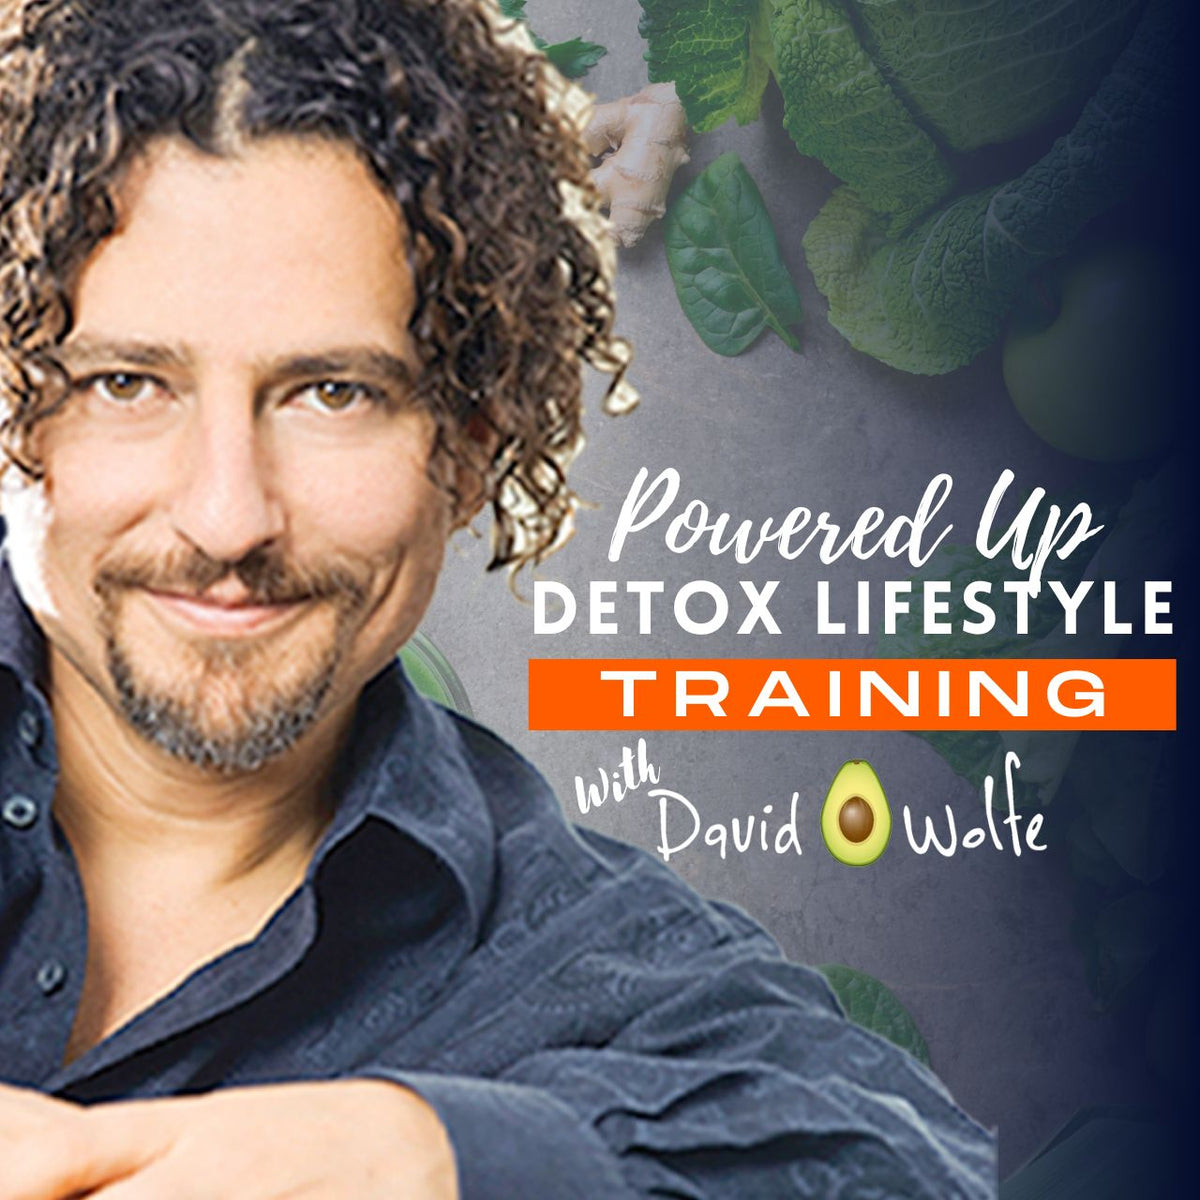 Powered Up Detox Lifestyle Training